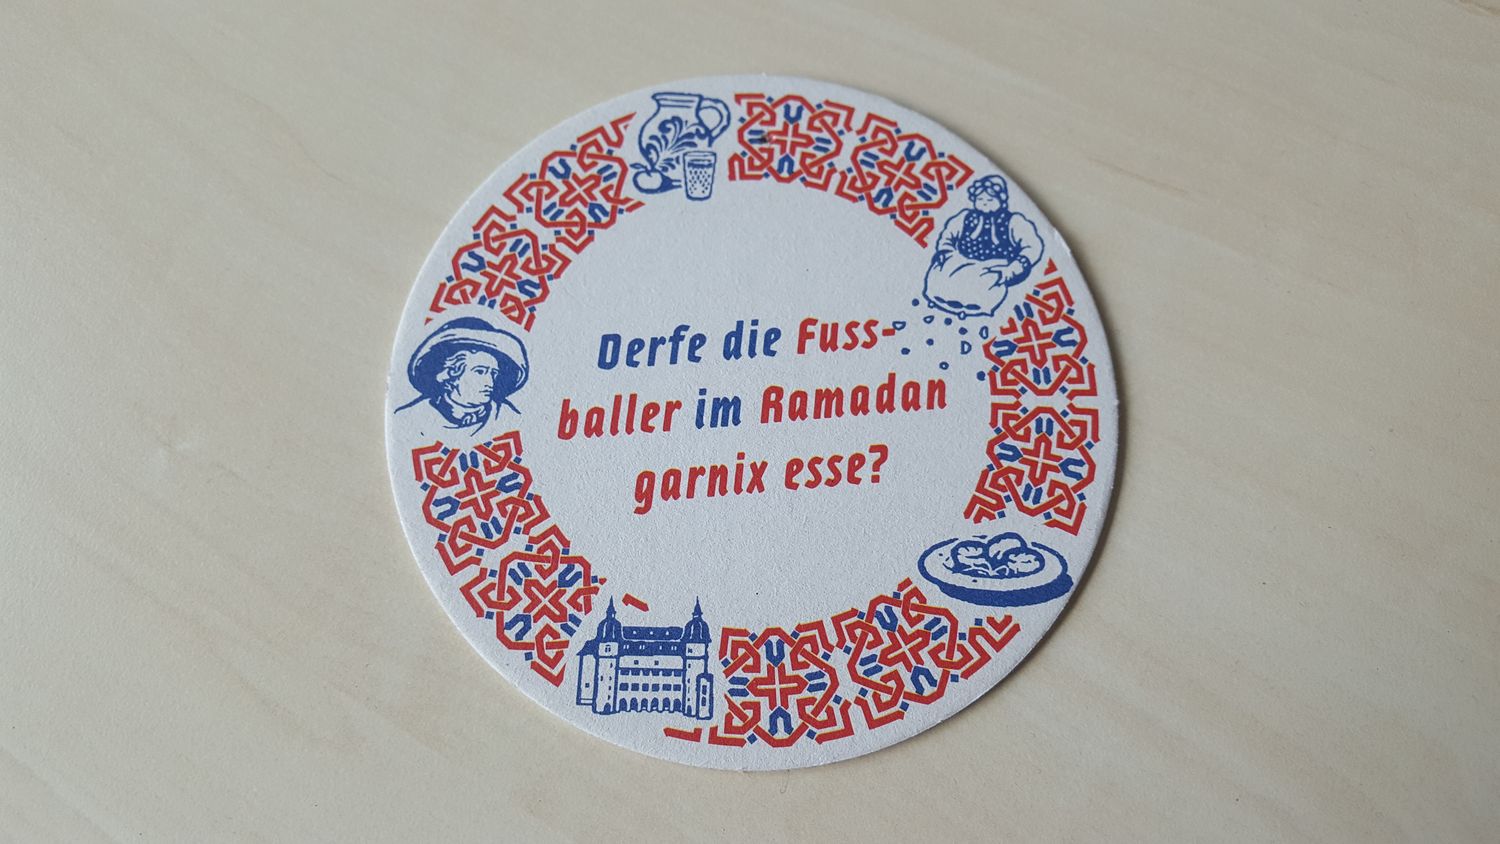 Bierdekel mit dem Text "Derfe die Fuss-Baller im Ramadan garnix essen"